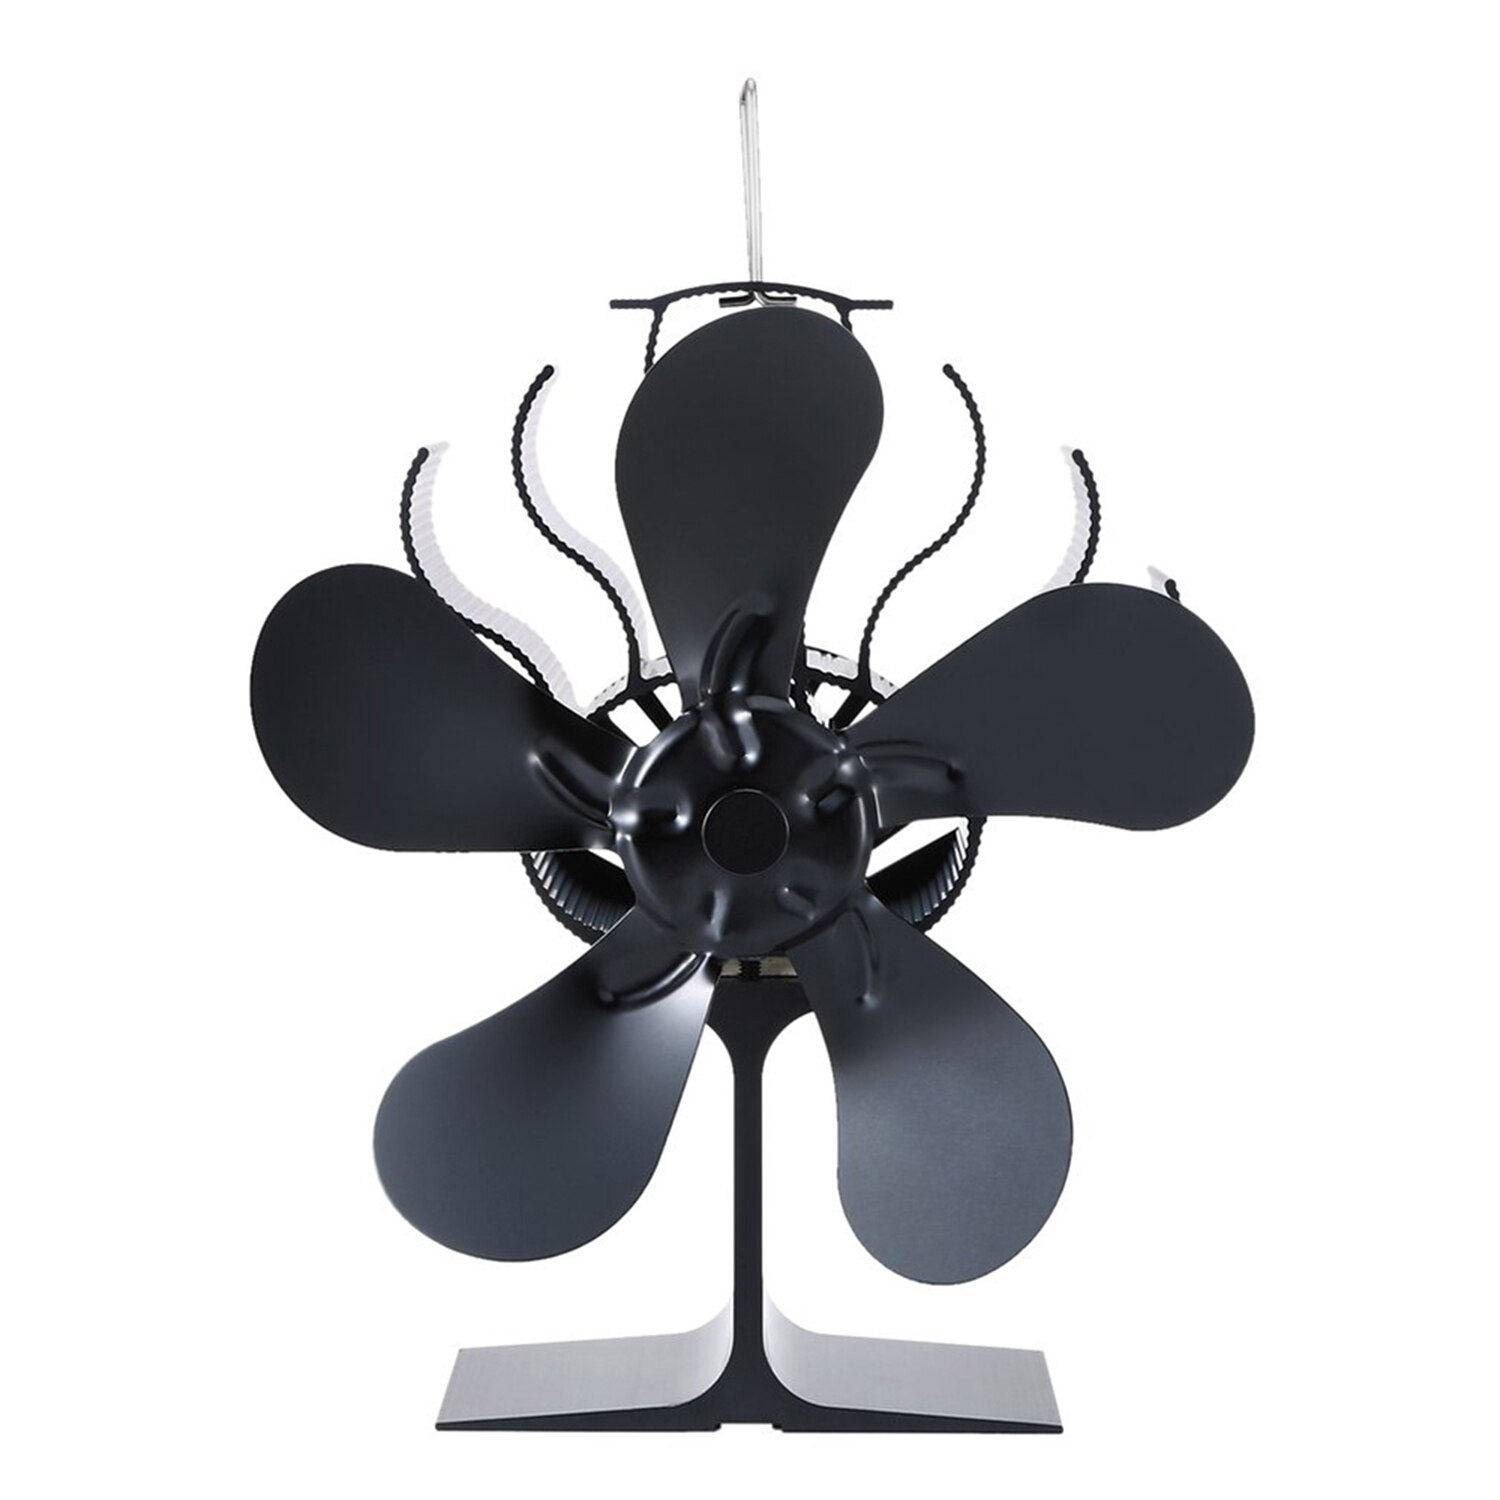 Zwart Haard Kachel Ventilator Warmte Aangedreven Kachel Fan Hout Brander Eco Vriendelijke Home Efficiënte Warmteverdeling Stille Ventilator